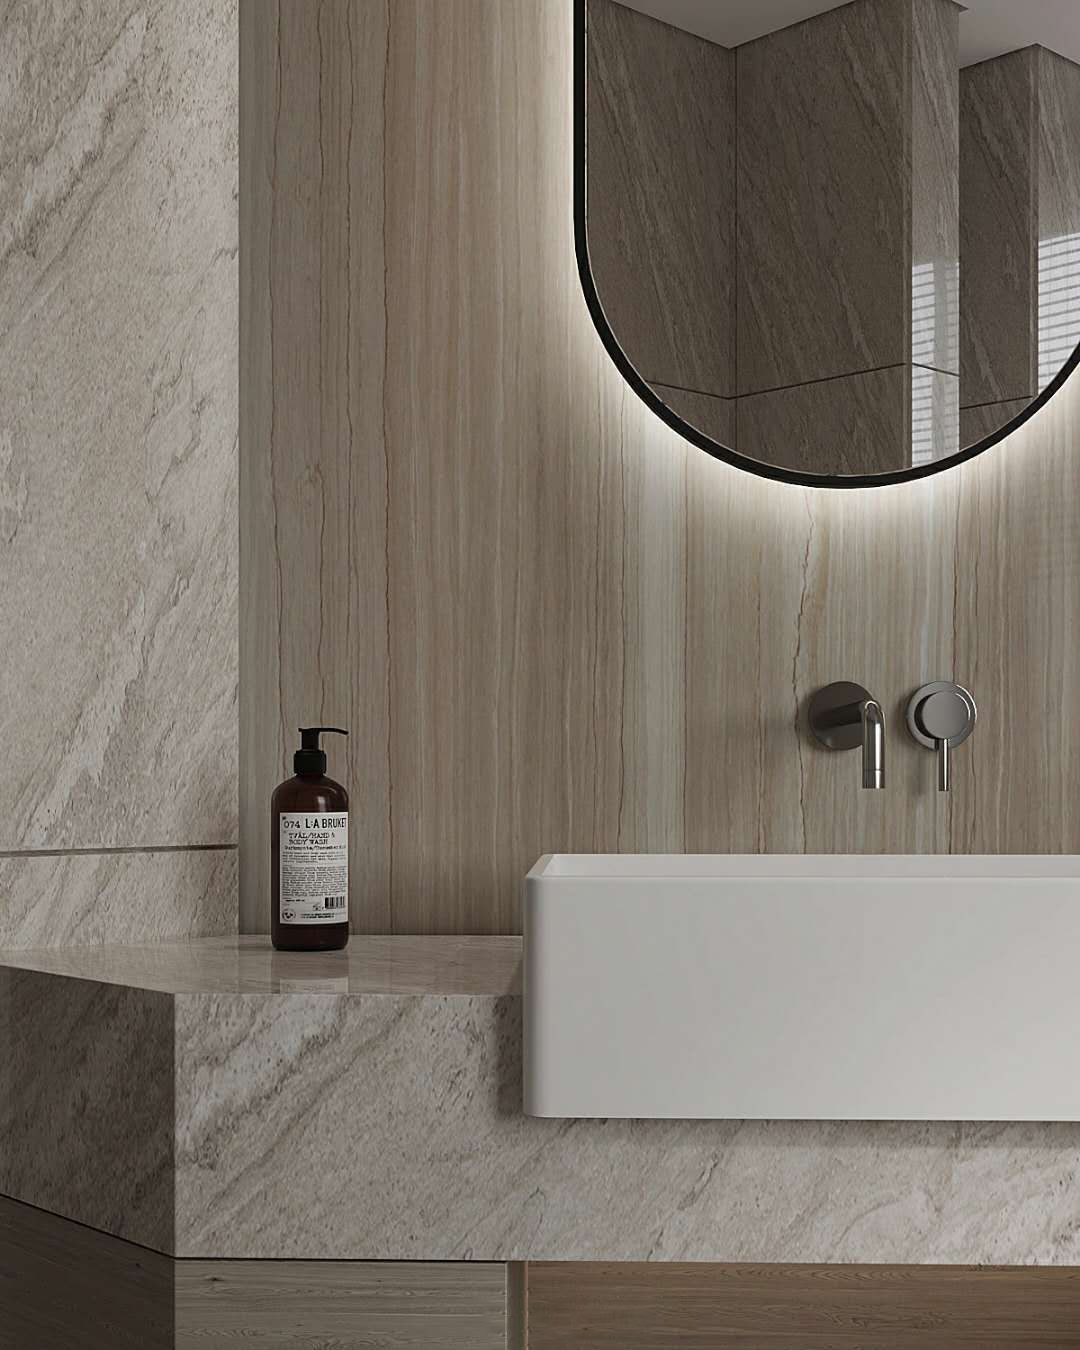 木質的浴室設計給人安穩、安定感